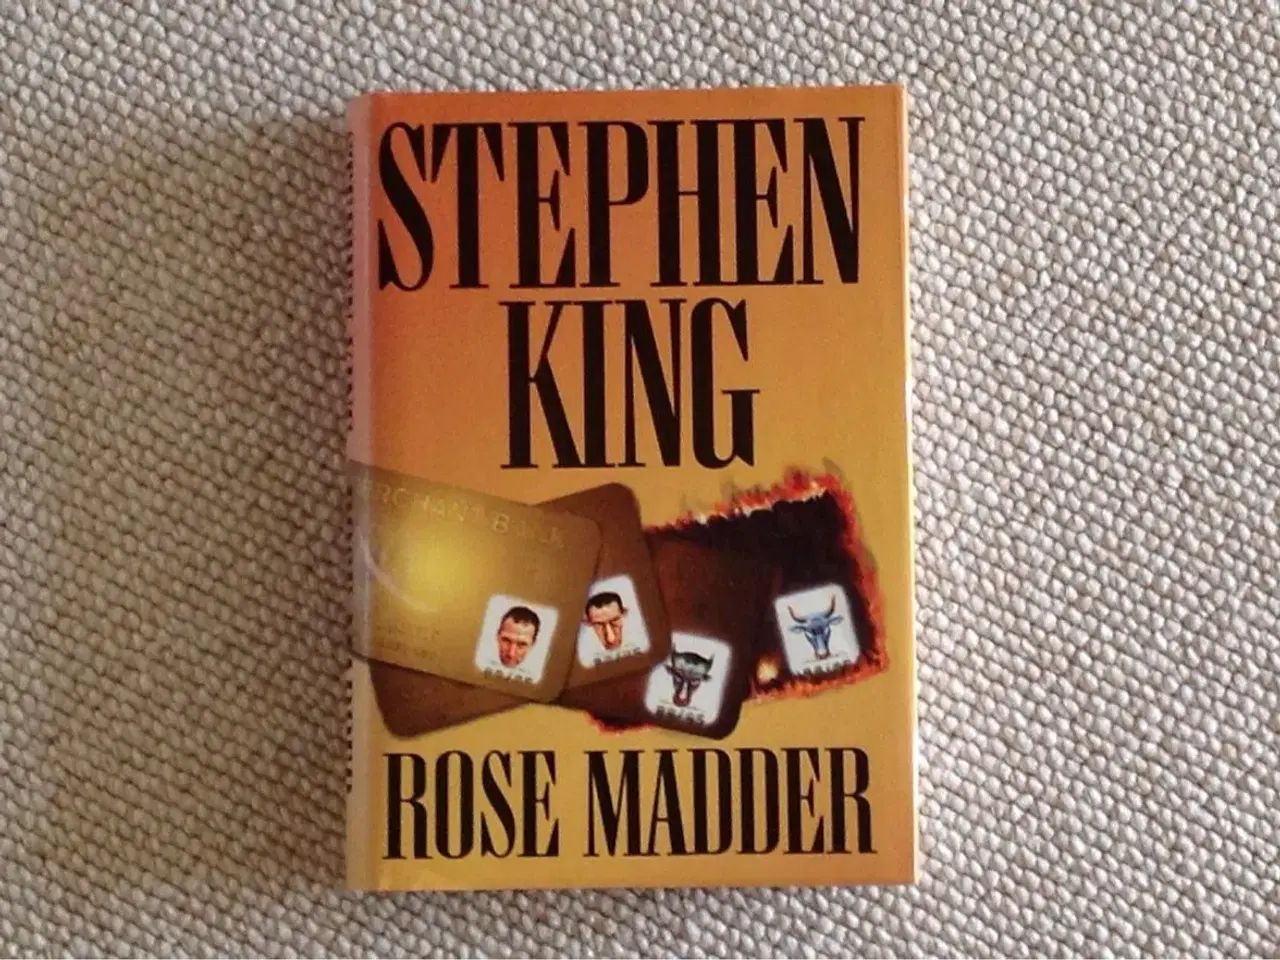 Billede 1 - Rose Madder" af Stephen King